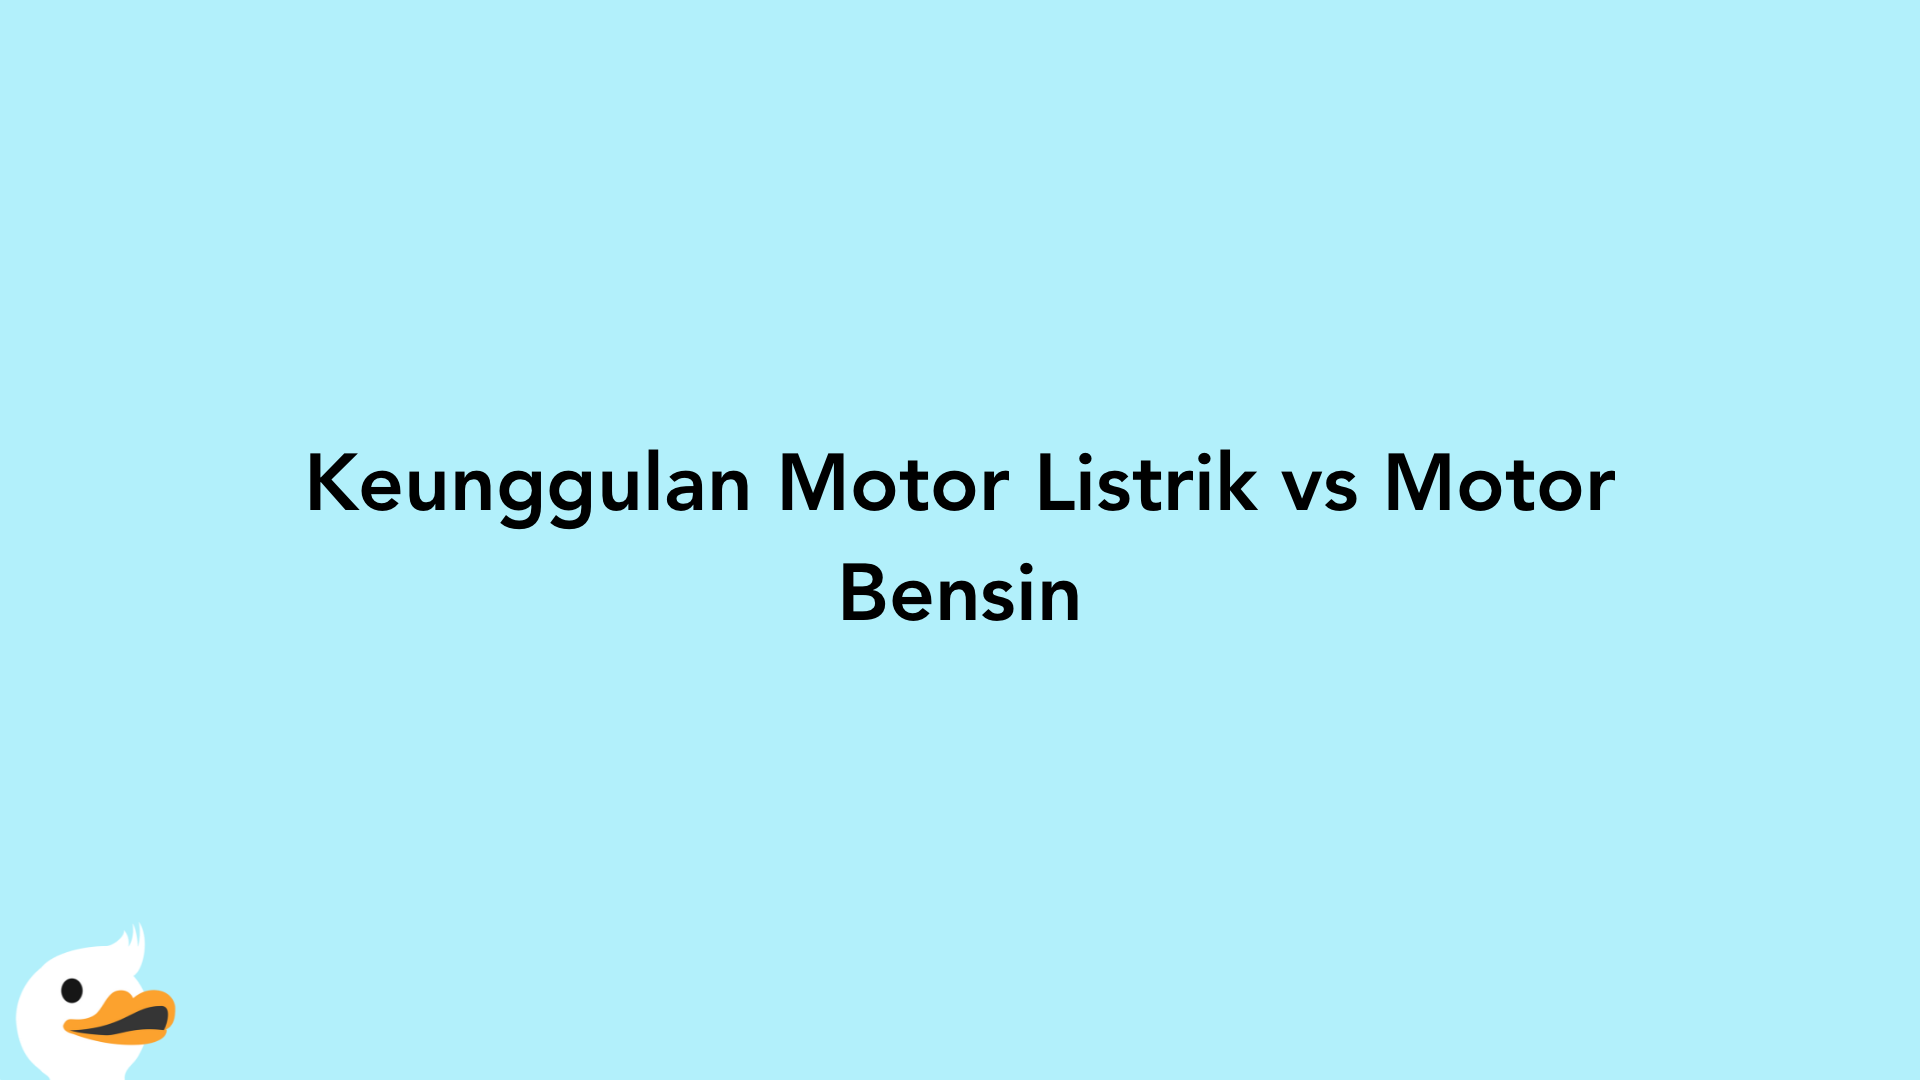 Keunggulan Motor Listrik vs Motor Bensin